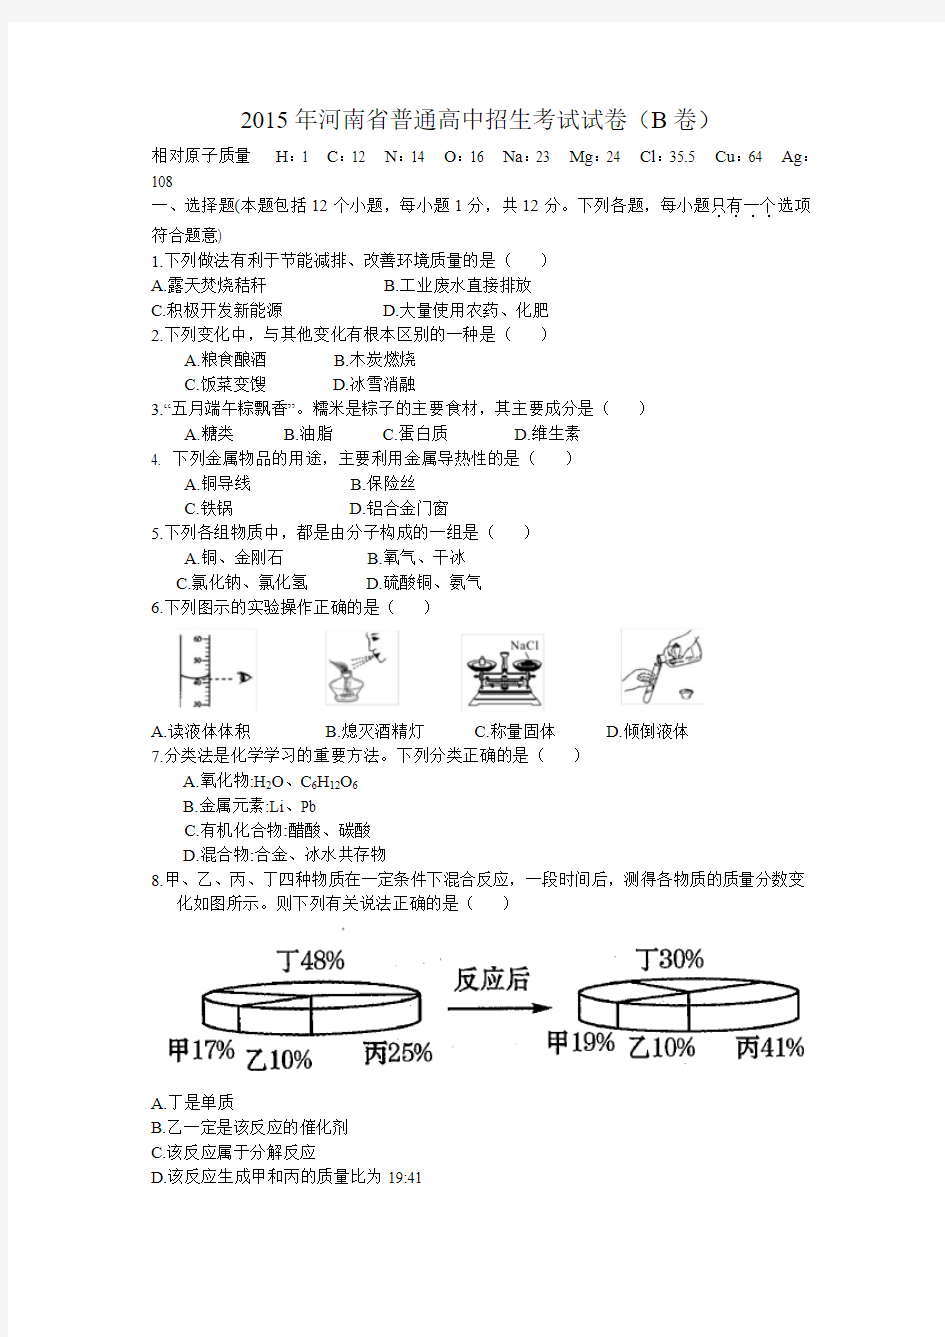 2015年河南省普通高中招生考试试卷(B)及答案